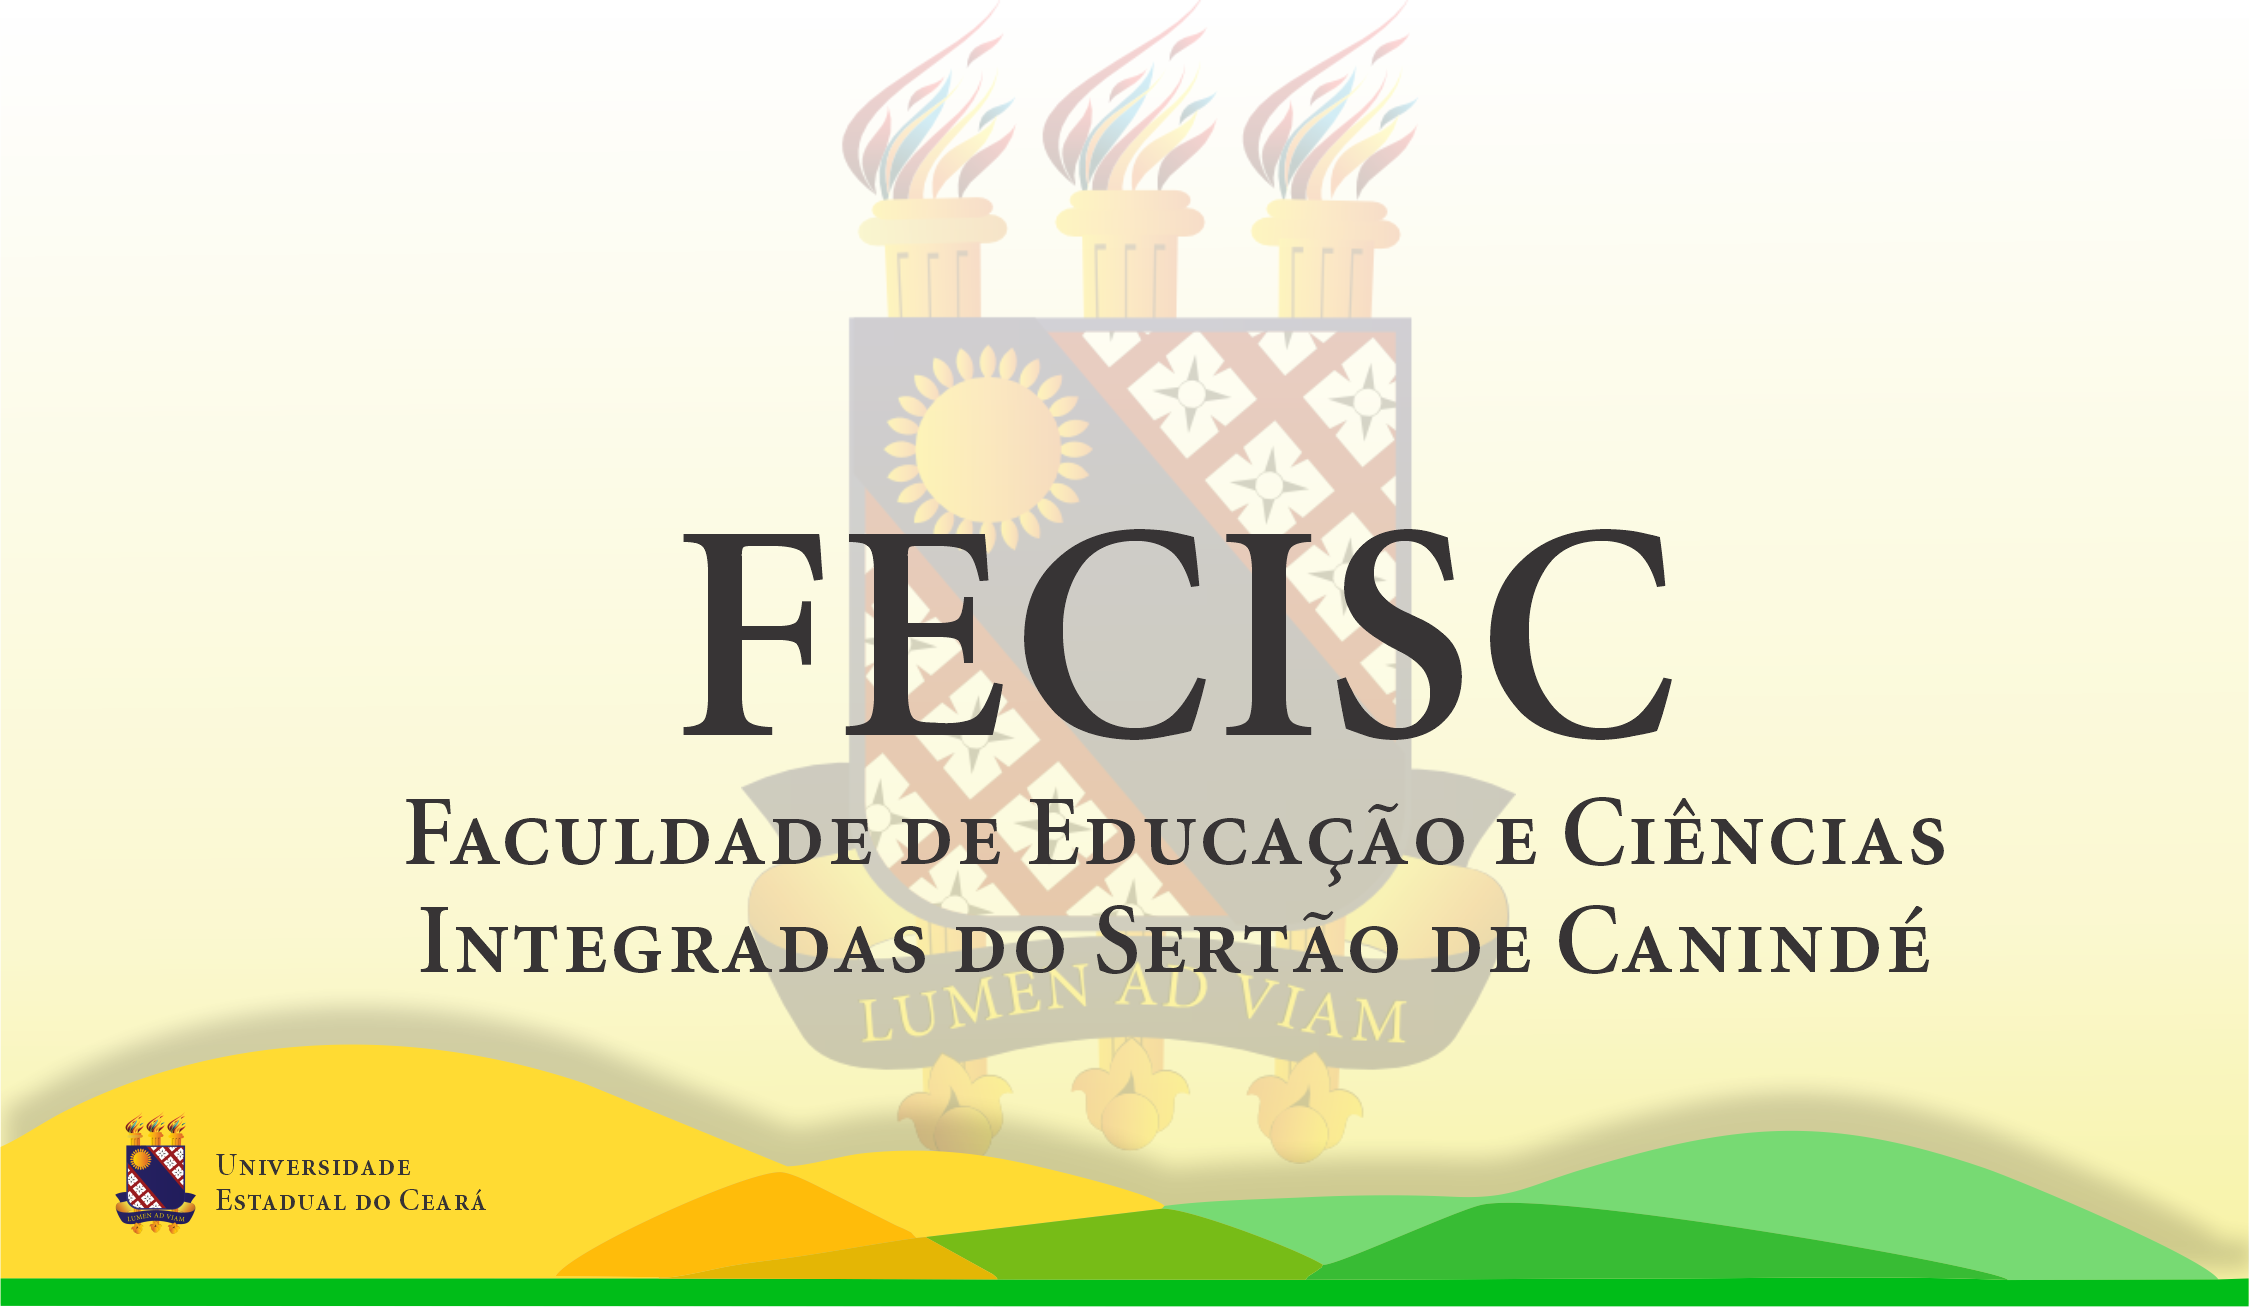 Fecisc – Faculdade de Educação e Ciências Integradas do Sertão de Canindé